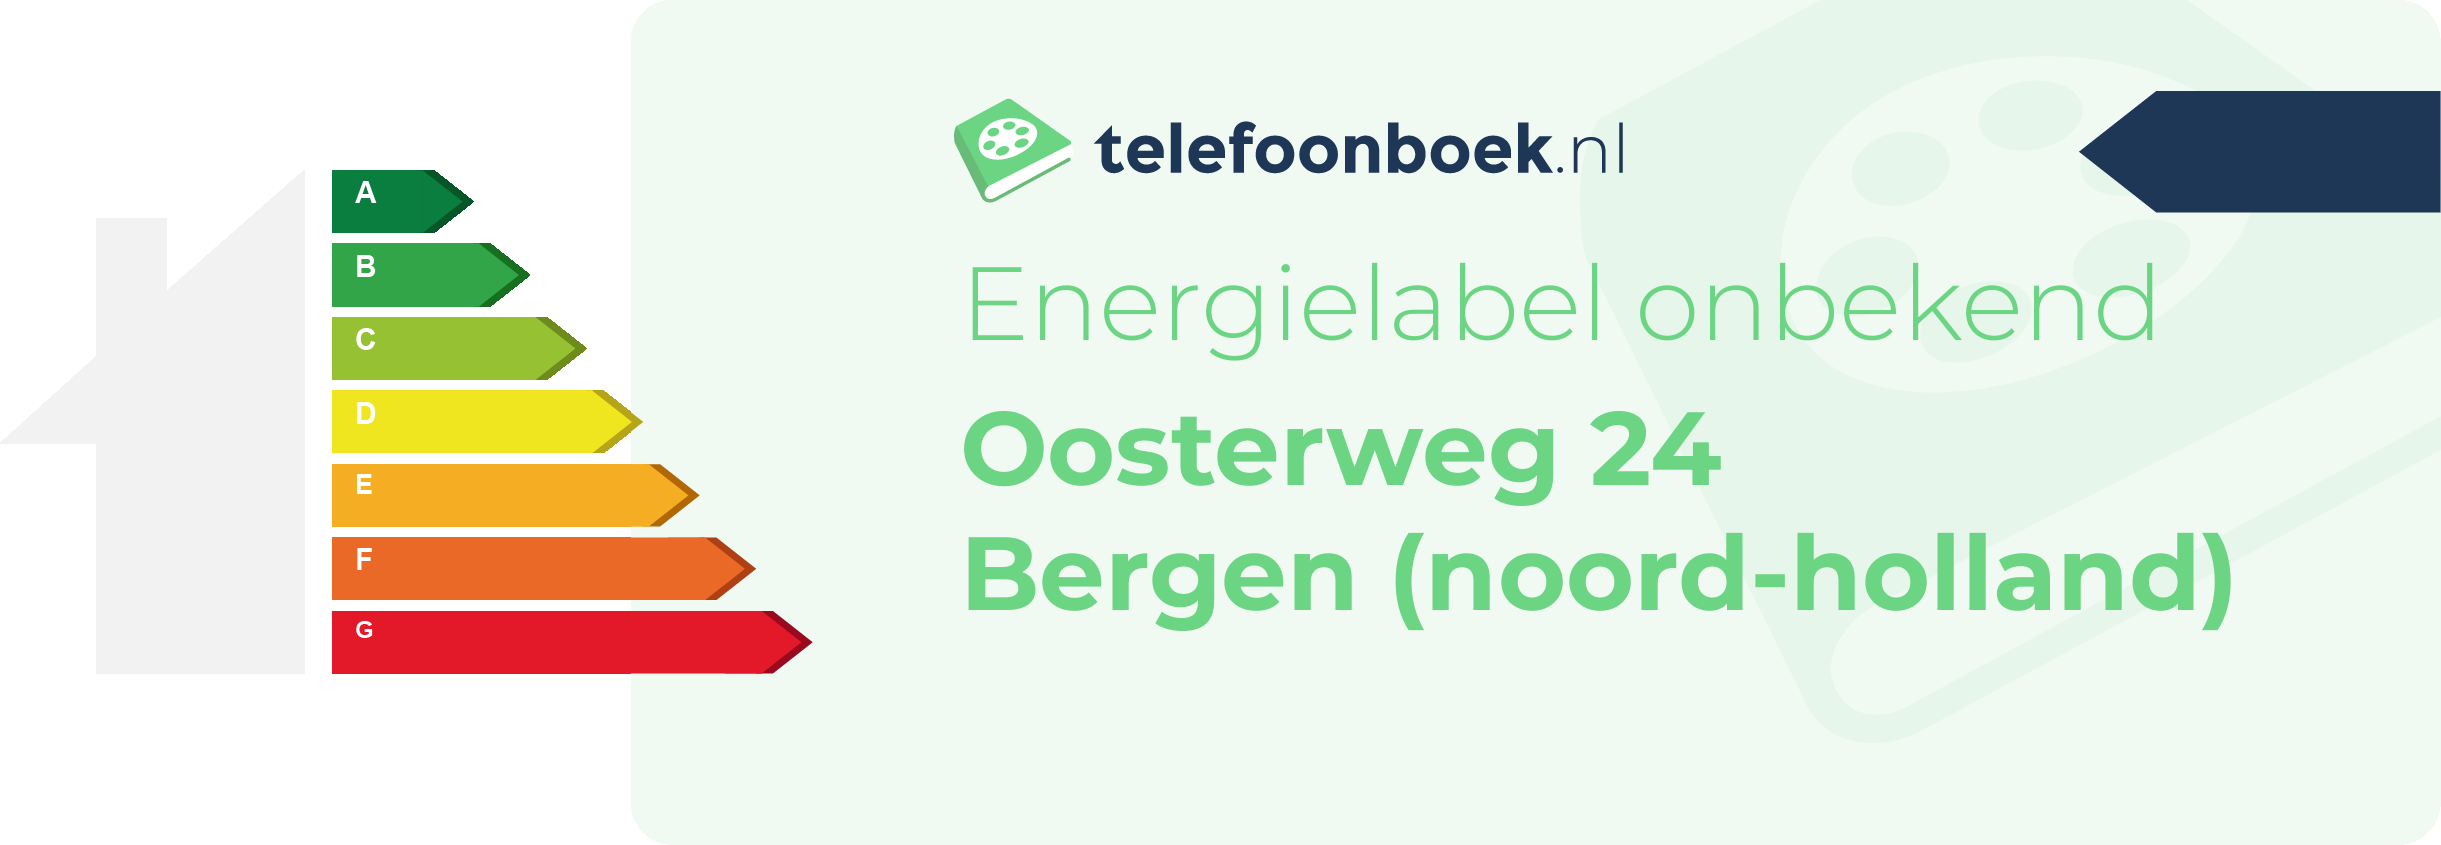 Energielabel Oosterweg 24 Bergen (Noord-Holland)